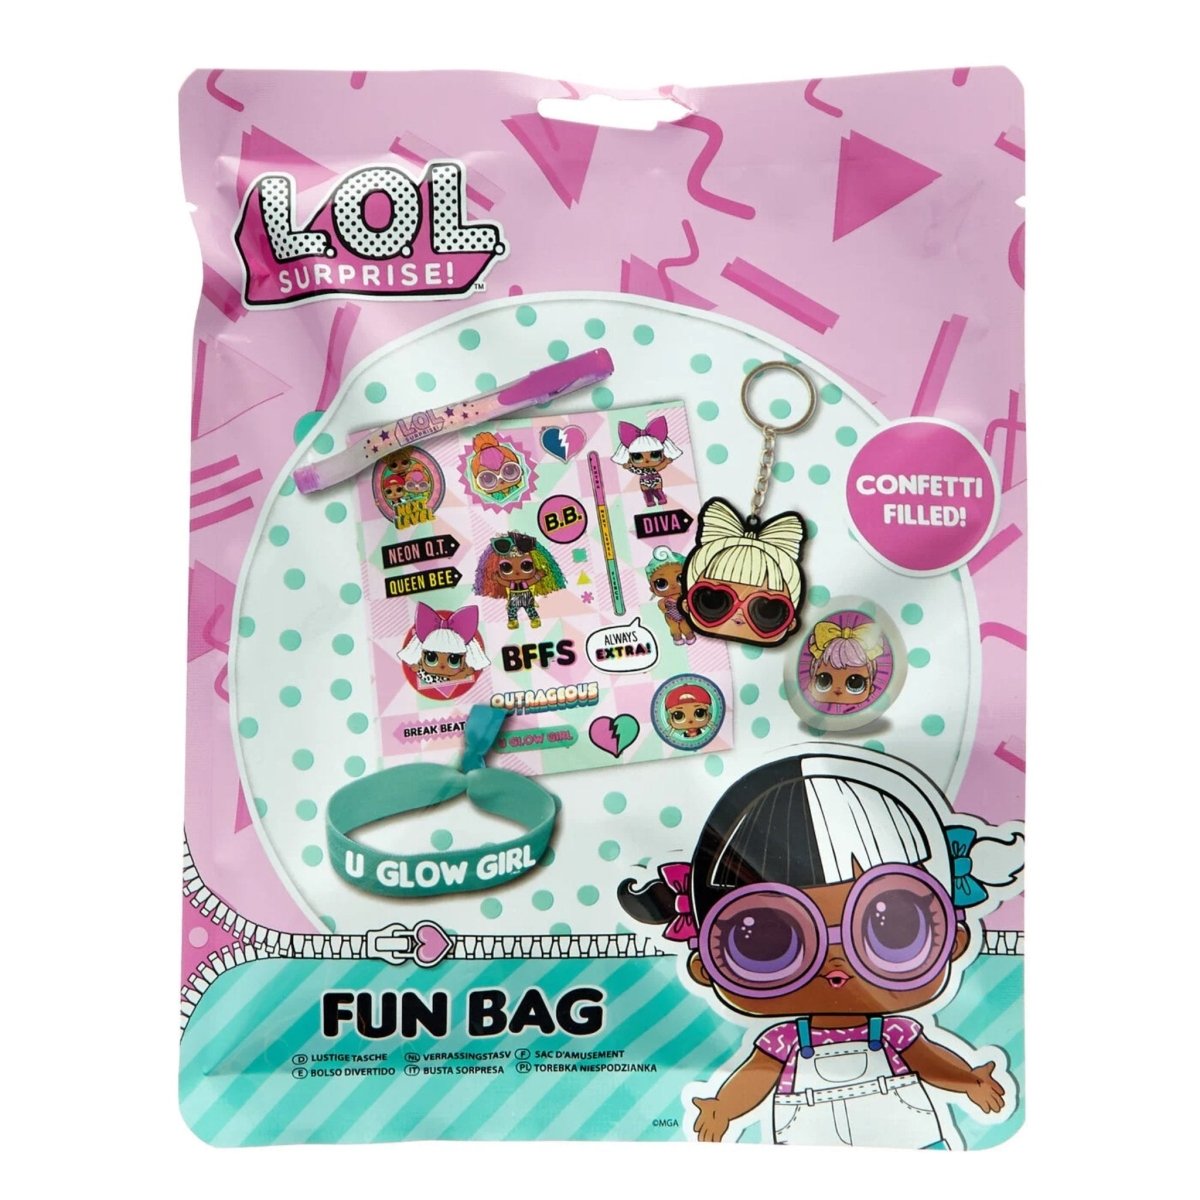 LOL Surprise Fun Bag - Kids Party Craft